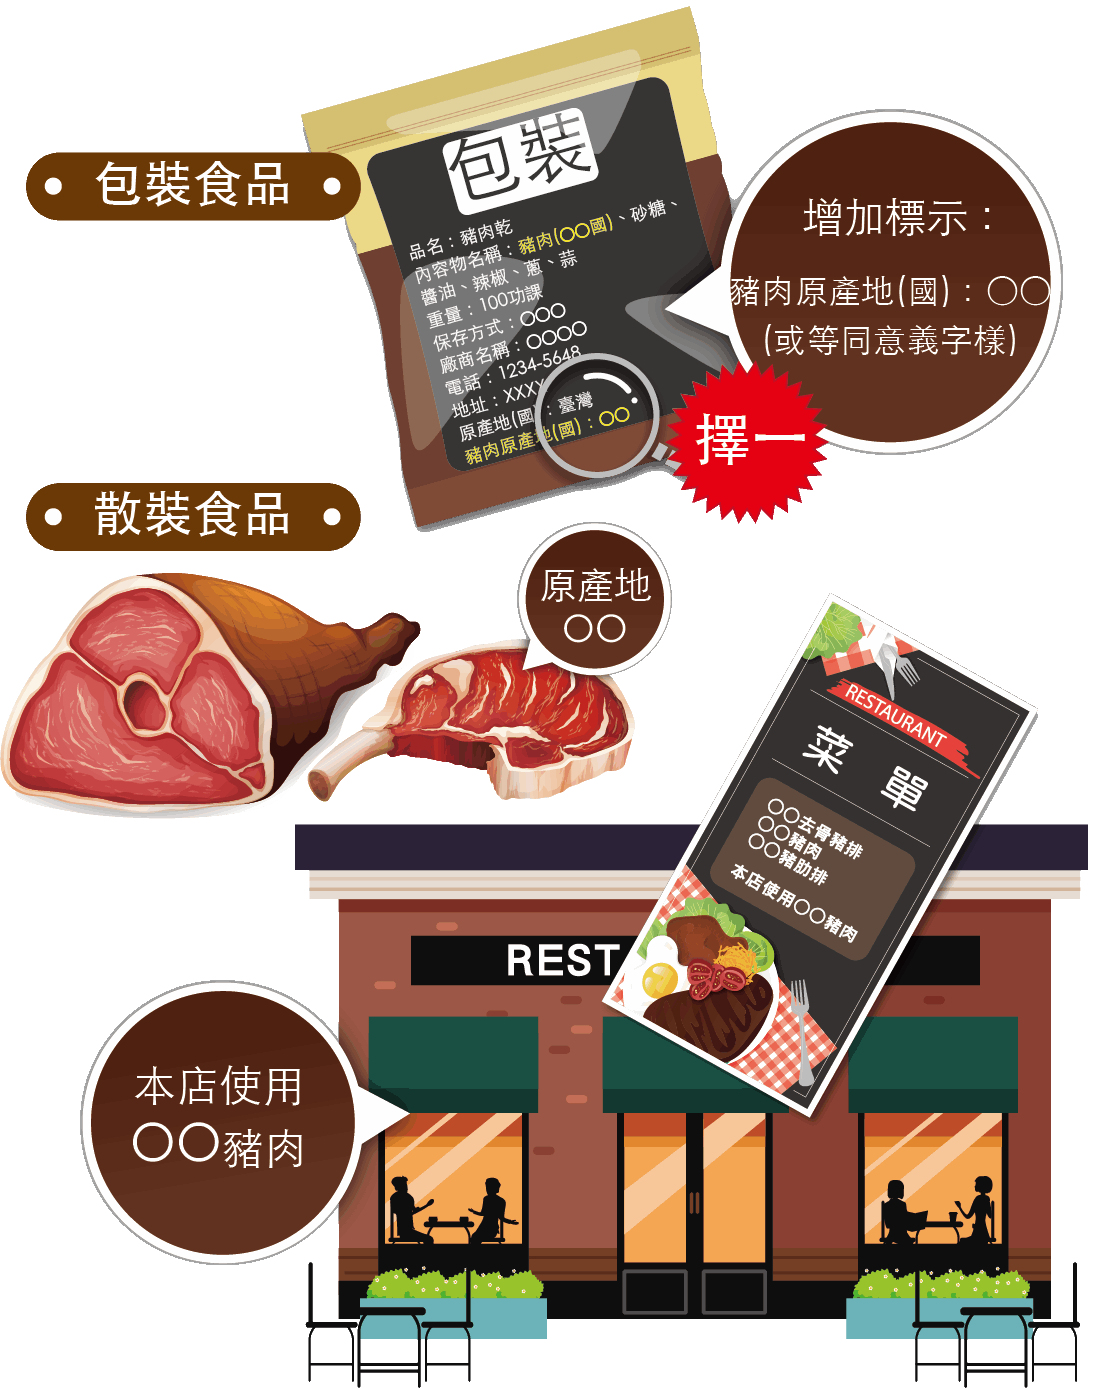 豬肉及豬可食部位原料之原產地標示